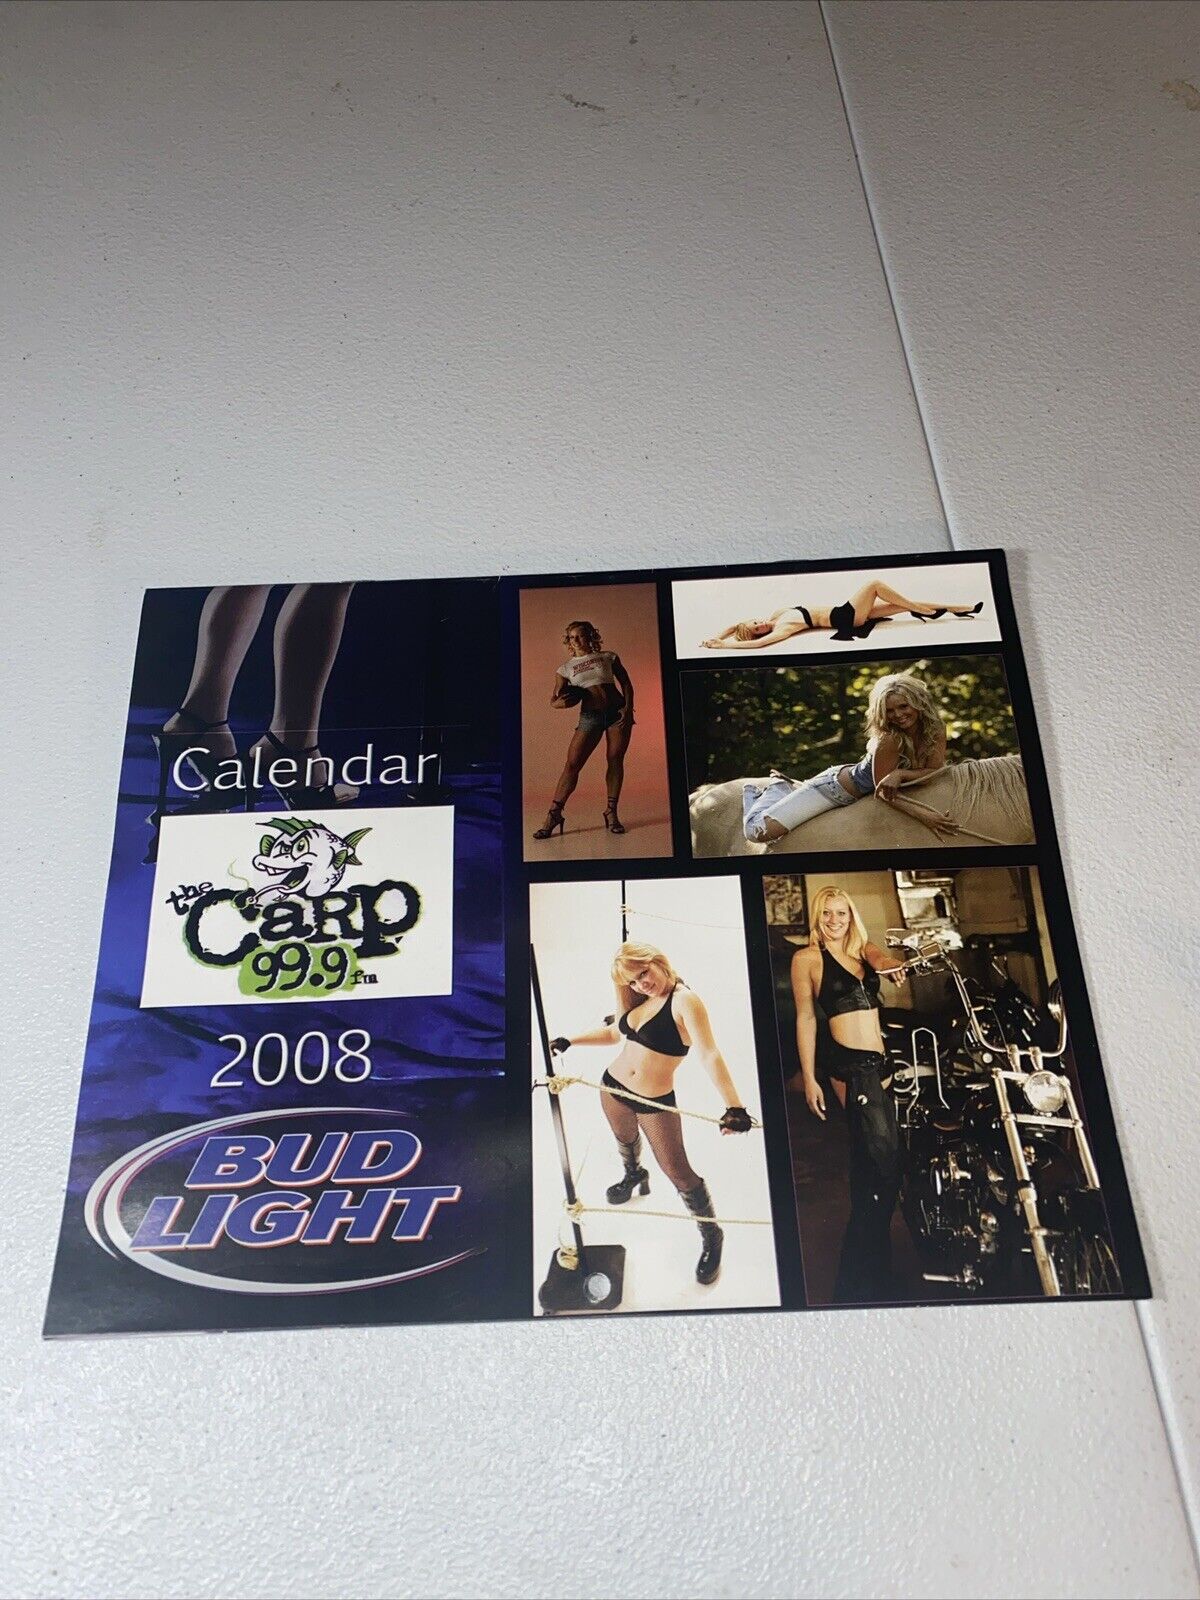 2008 Budweiser Bud Light Calendar Hot Girl Model Eau Claire Wisconsin Carp 99.9